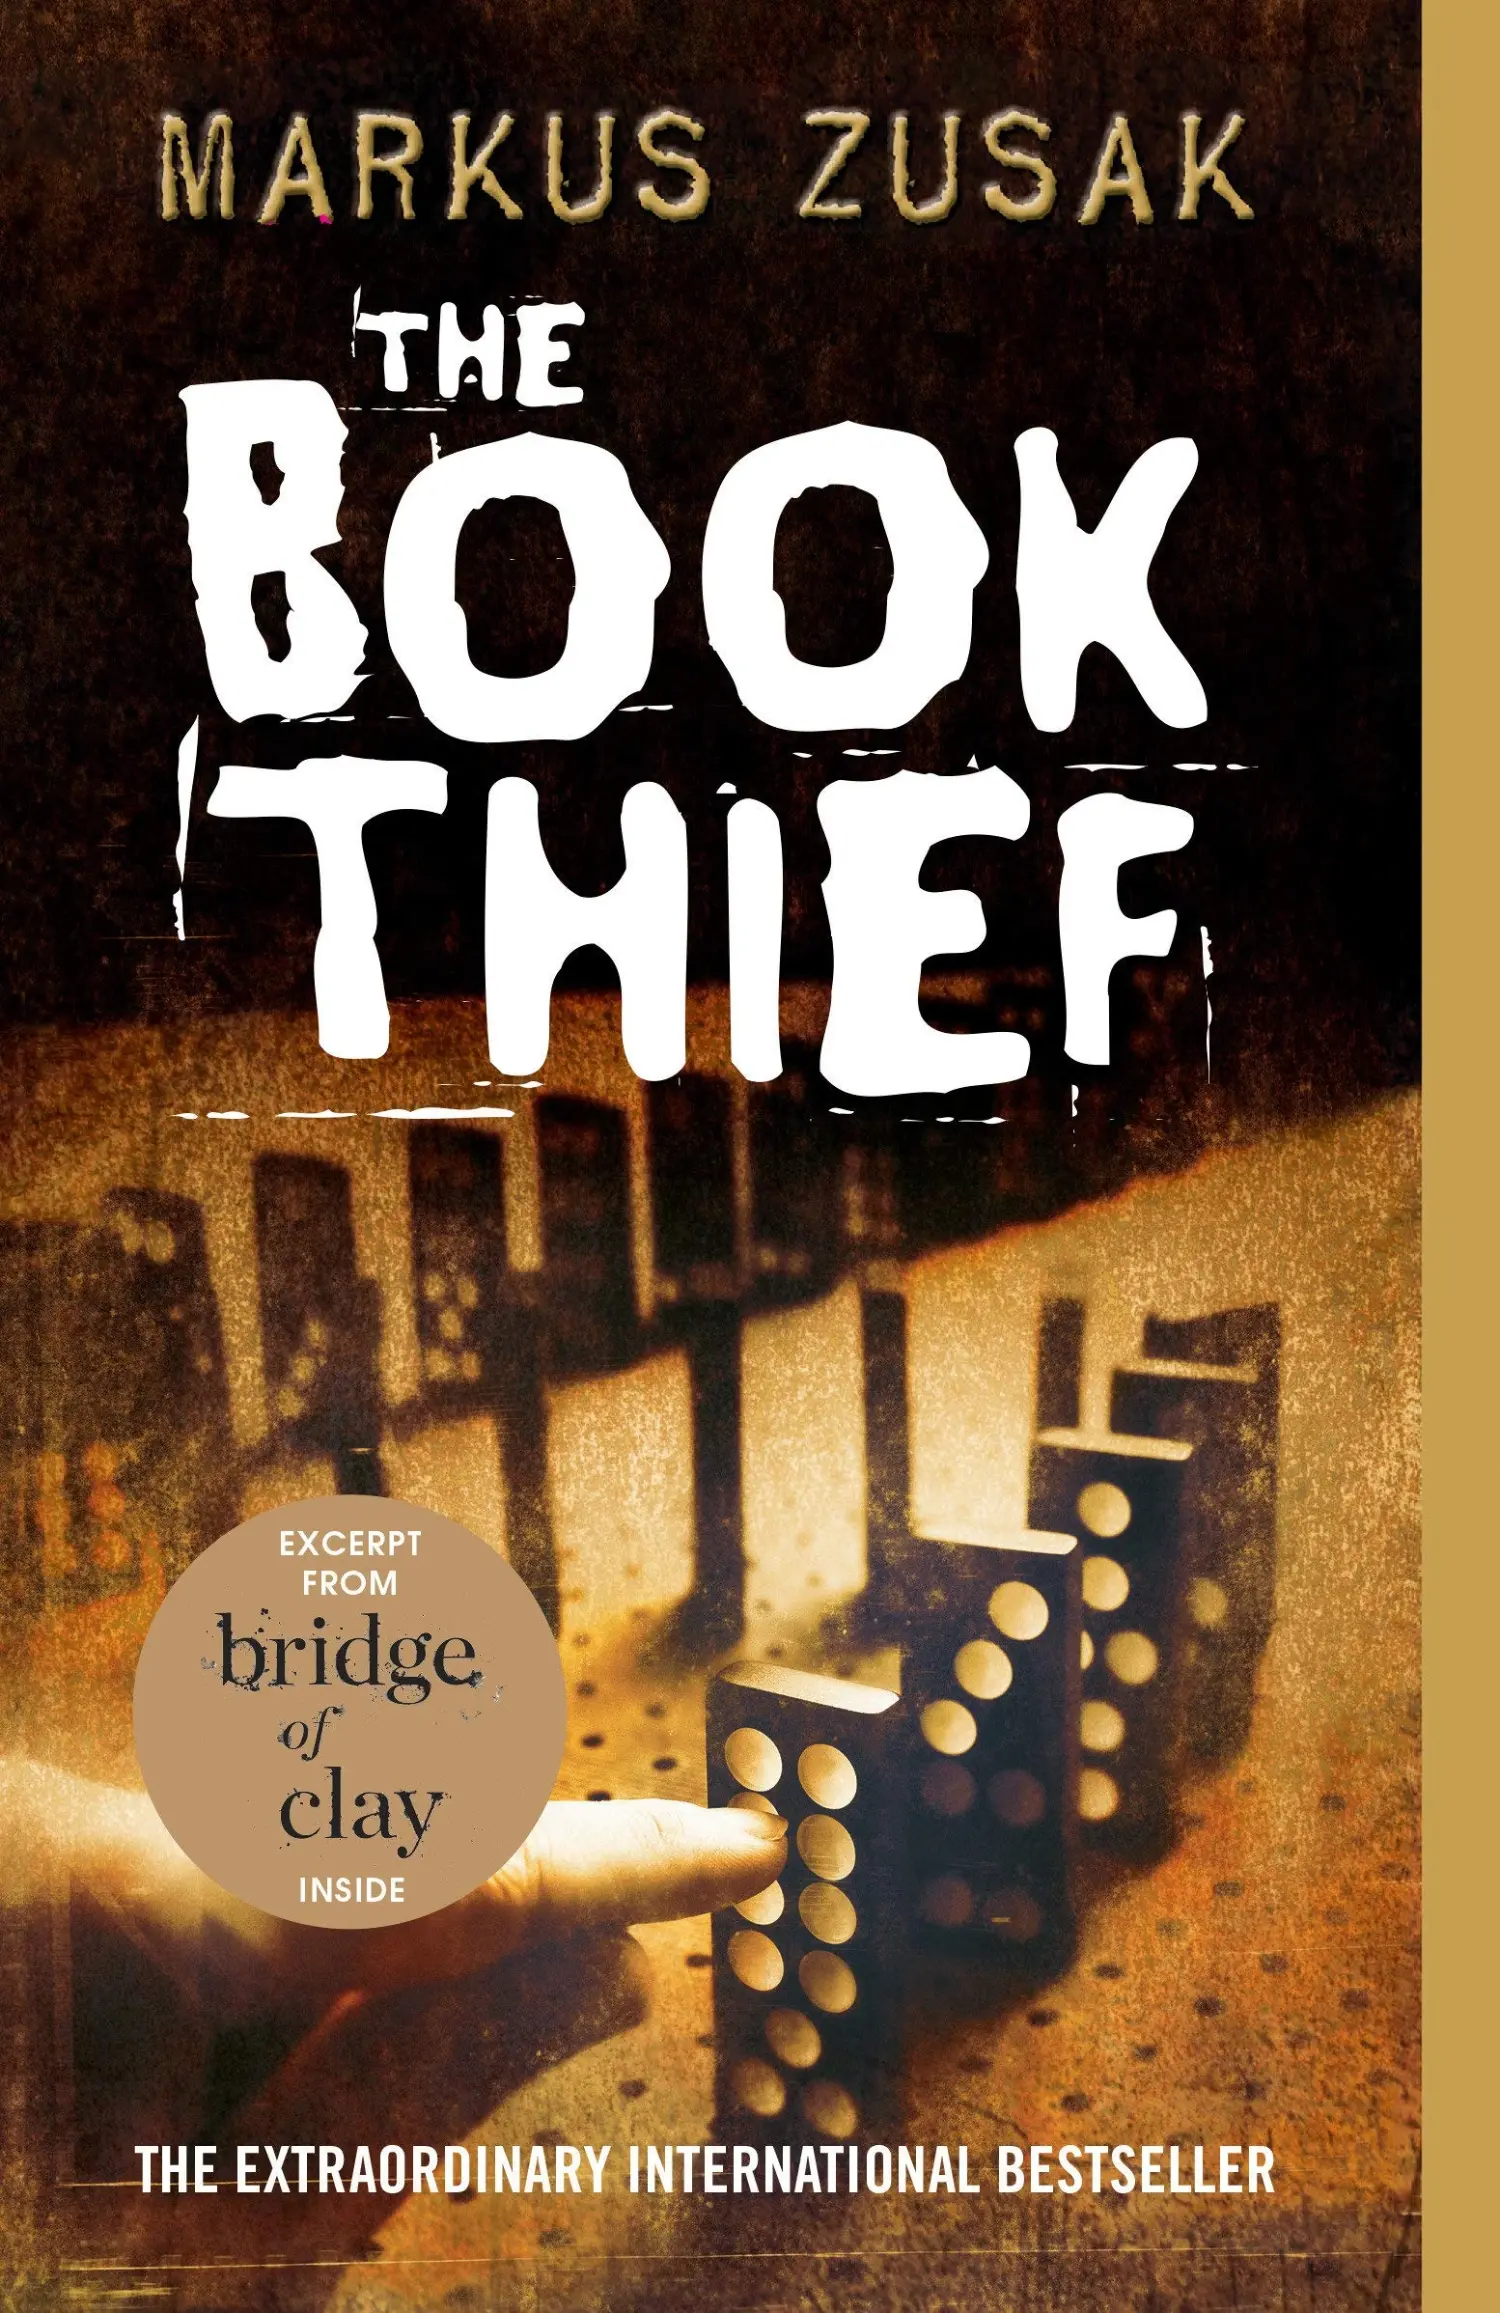 The Book Thief by Markus Zusak (amazon)